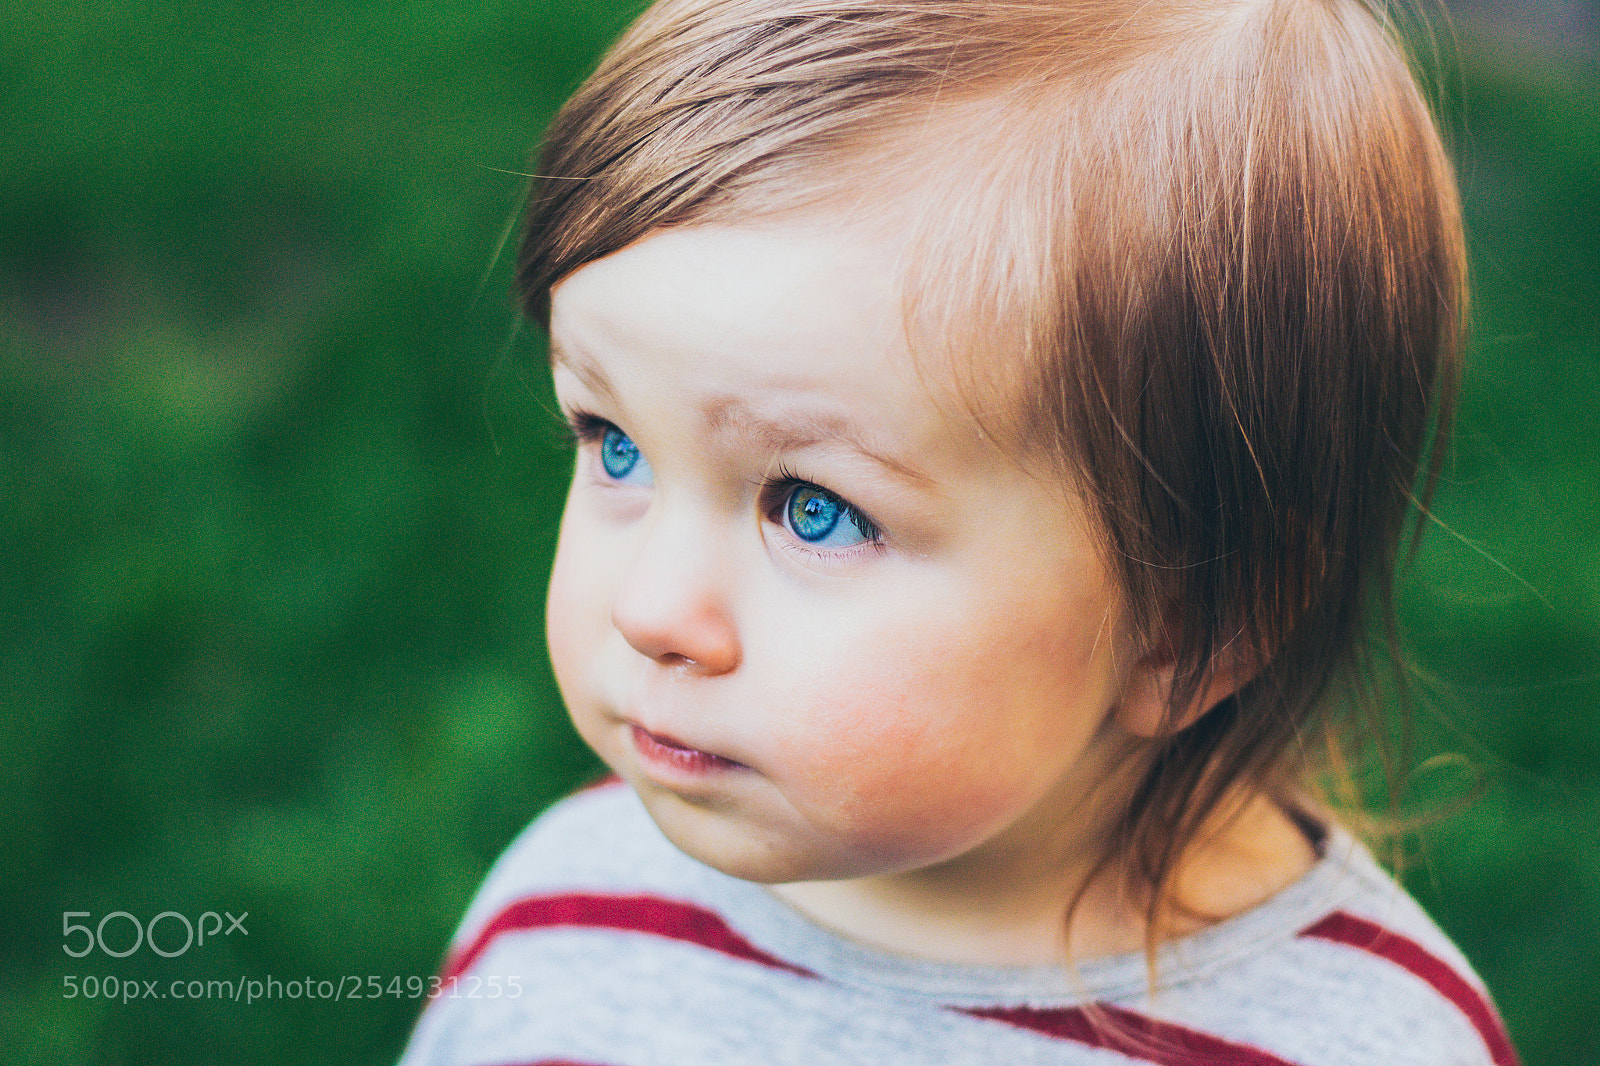 Canon EOS 100D (EOS Rebel SL1 / EOS Kiss X7) sample photo. Little toddler girl closeup photography